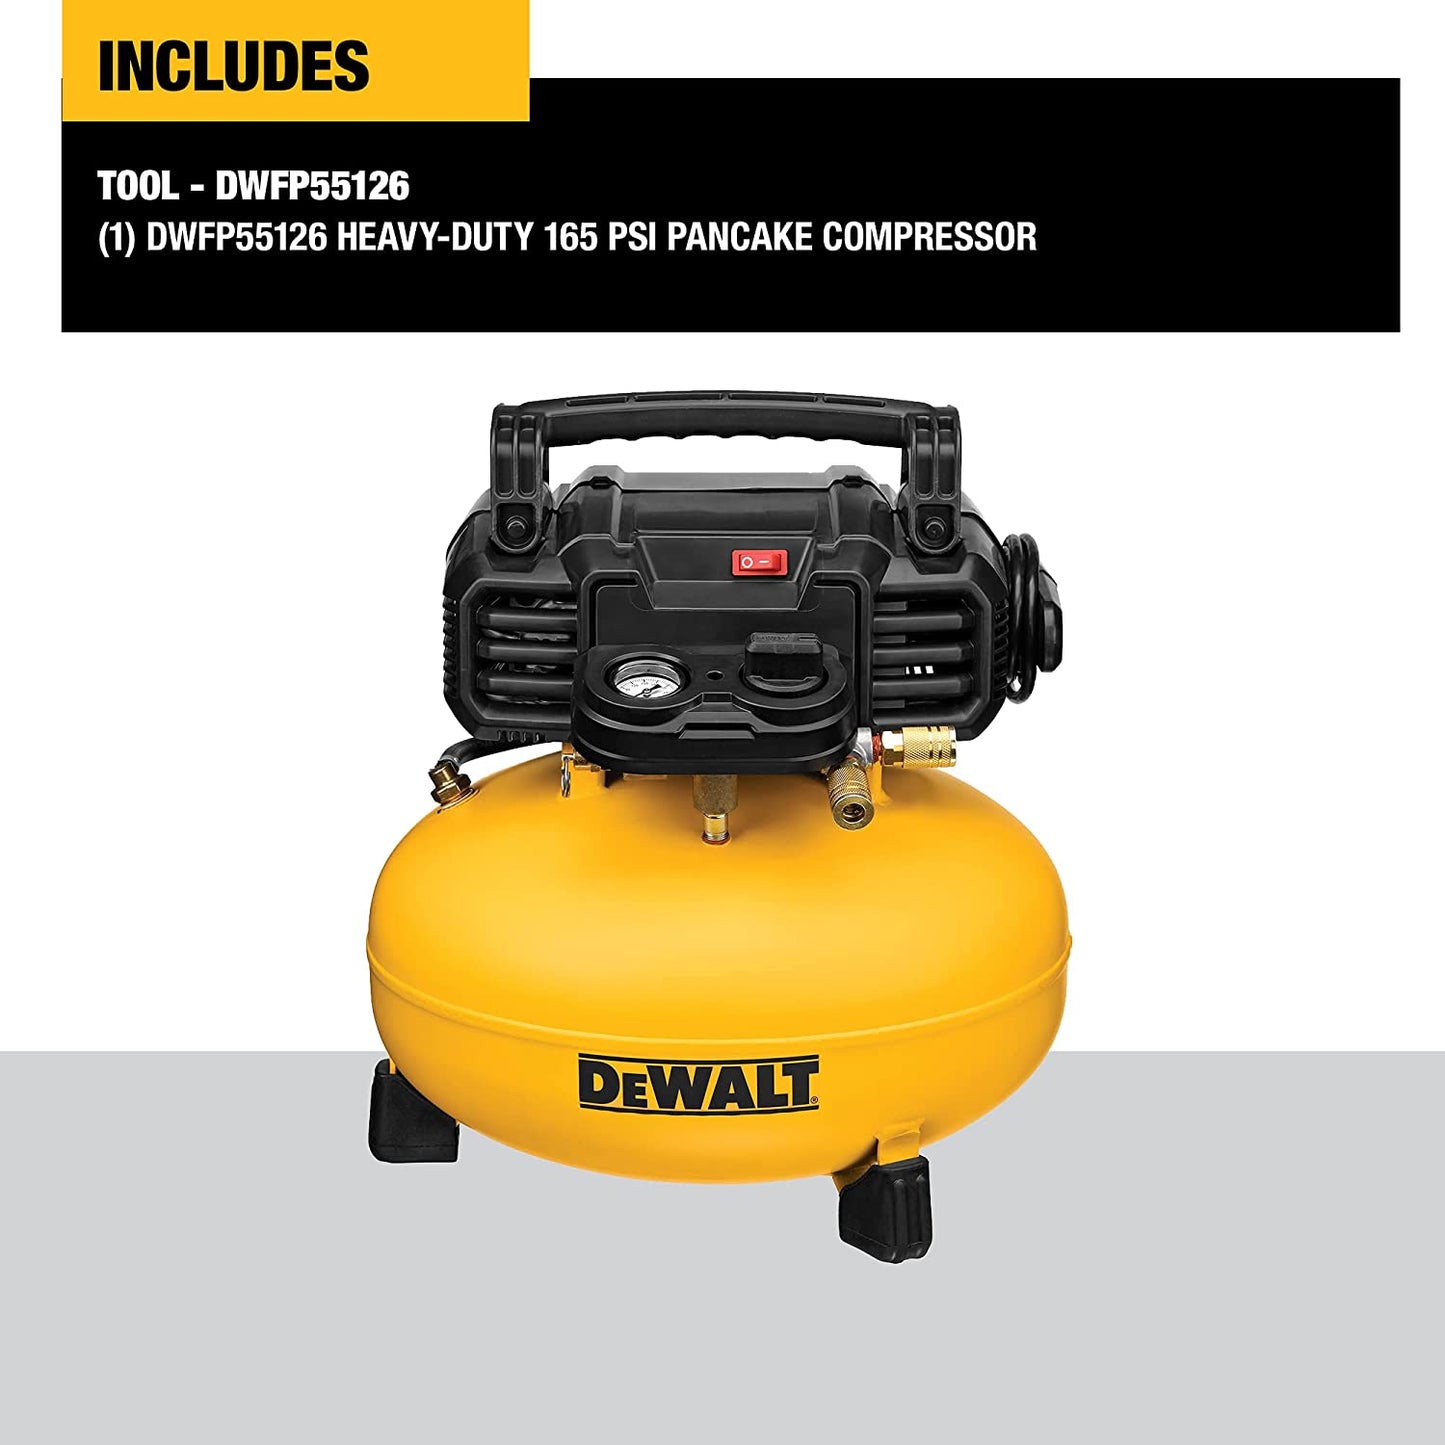 Dewalt DWFP55126 Heavy Duty Pancake Compressor (165 Psi)